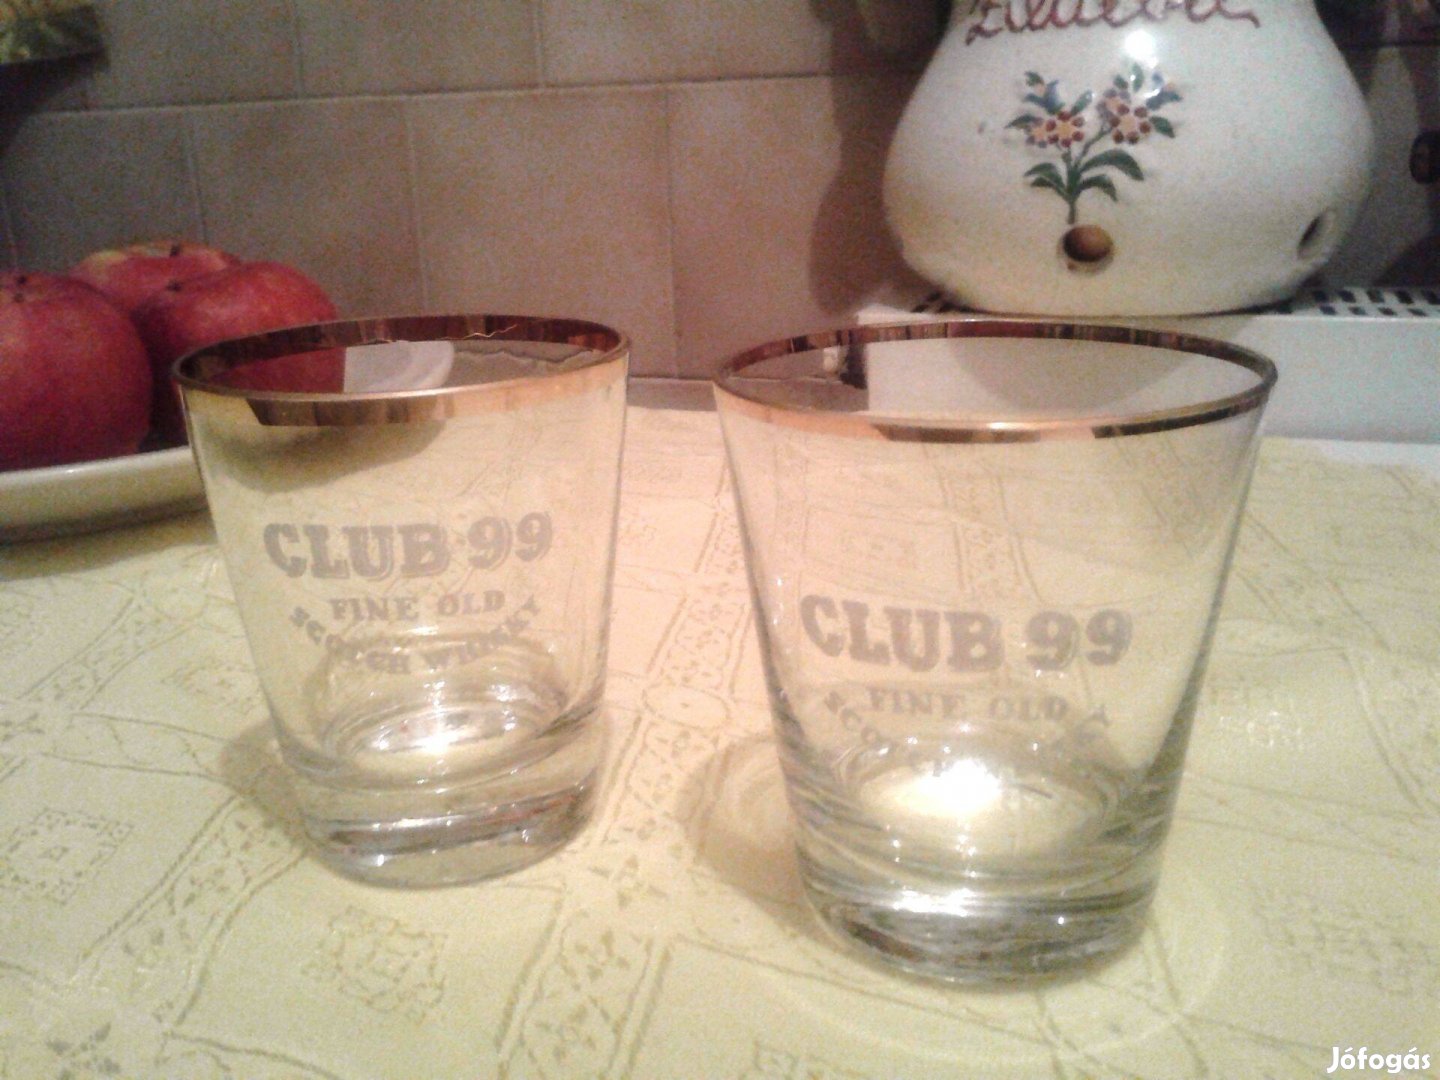 2 db Klub 99-es feliratú arannyal díszített üveg pohár egyben olcsóbb